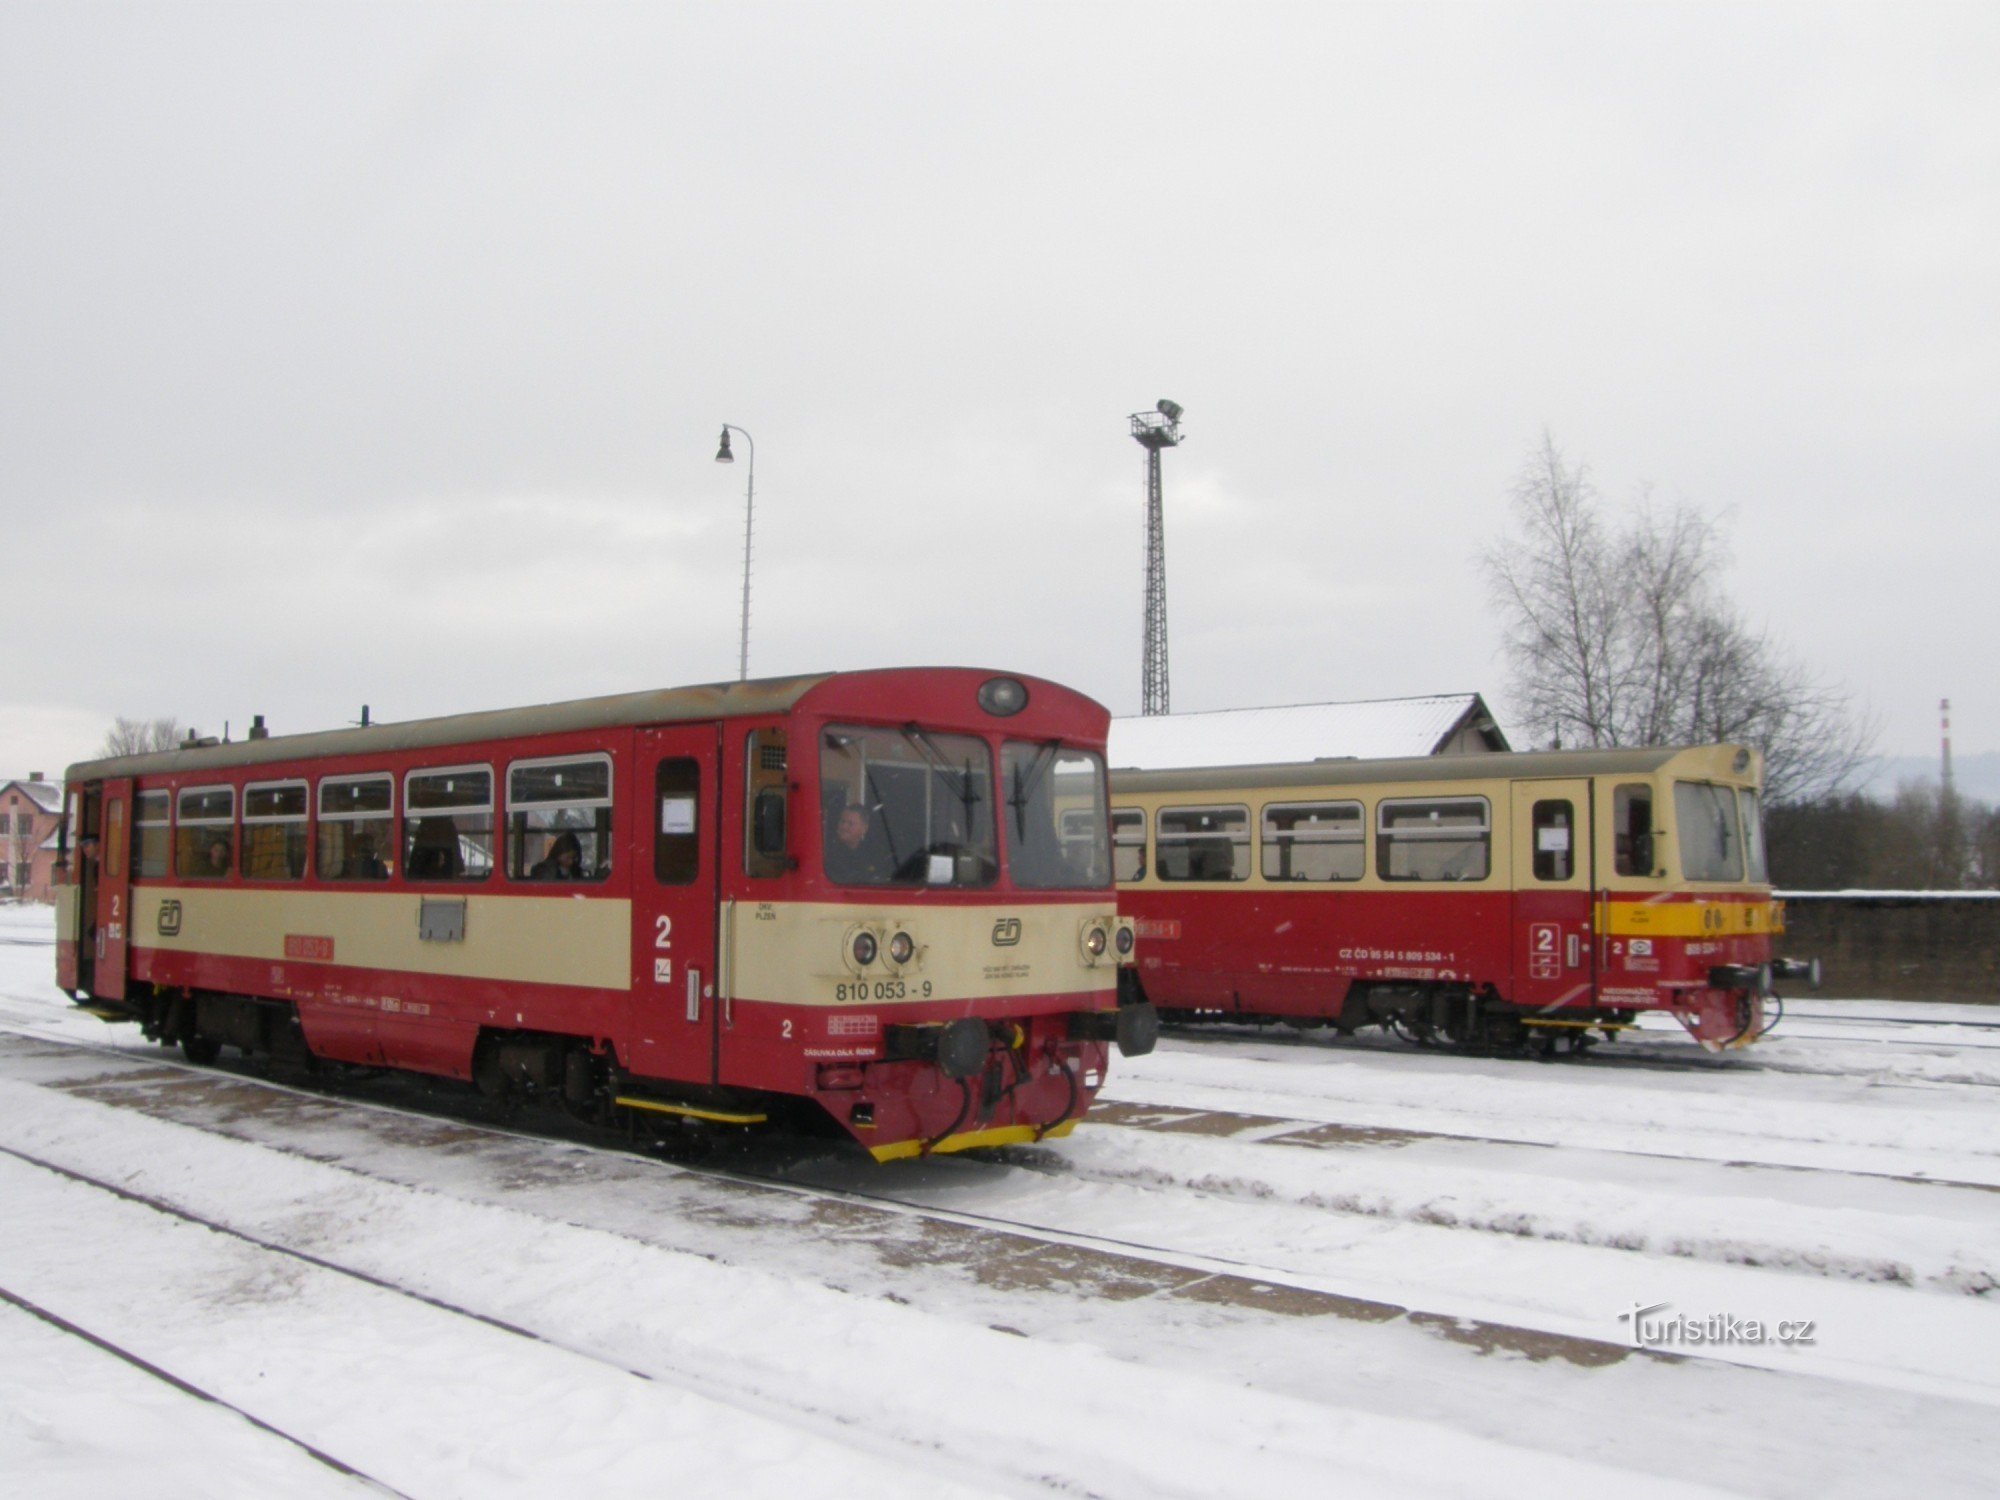 Os trens também partem de Volar na direção de Černý Kříž